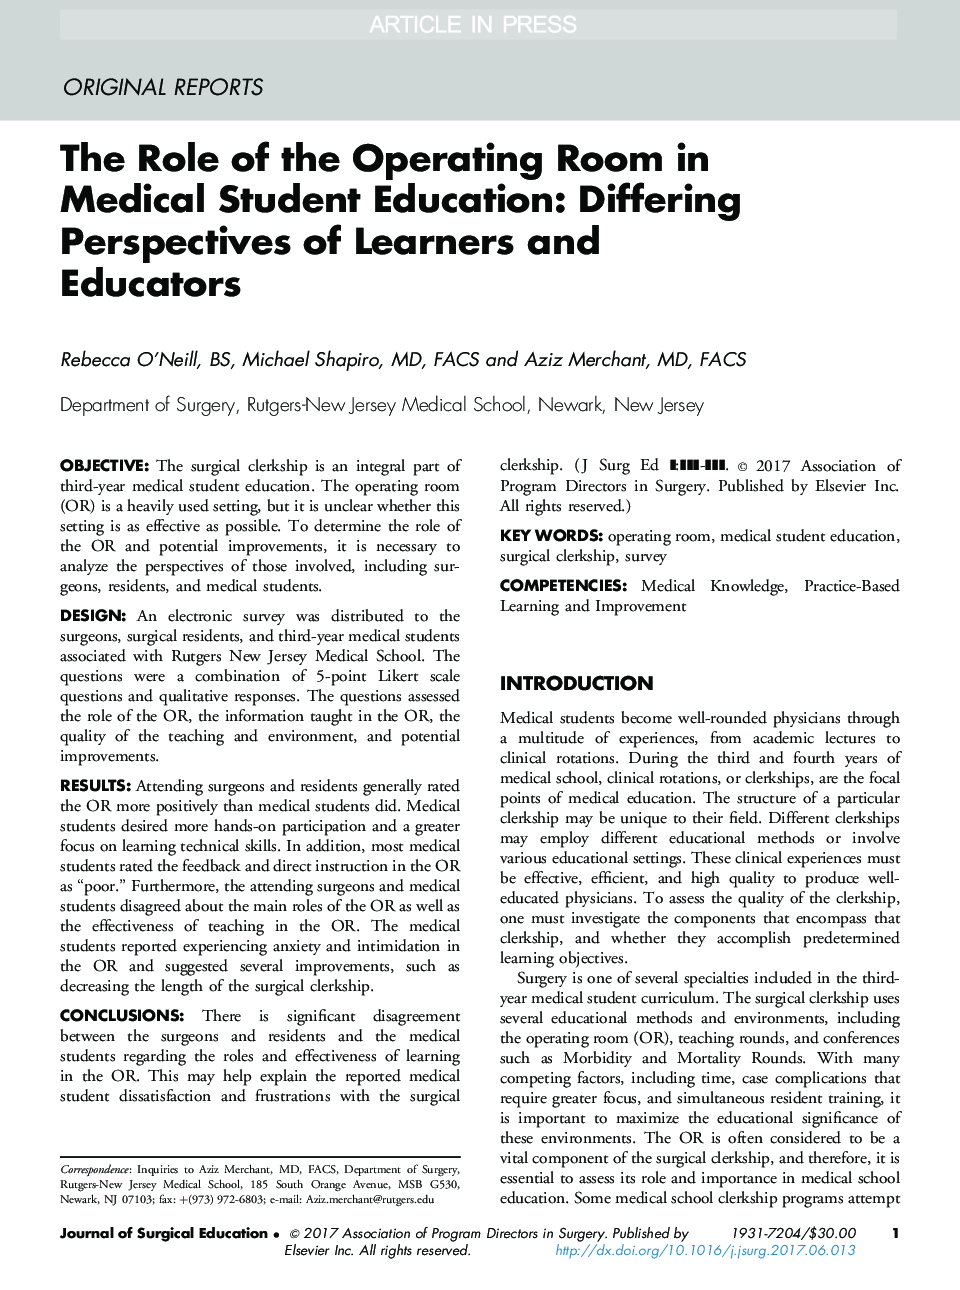 نقش اتاق عملیات در آموزش پزشکی دانشجویان: دیدگاه های متفاوت دانشجویان و معلمان 